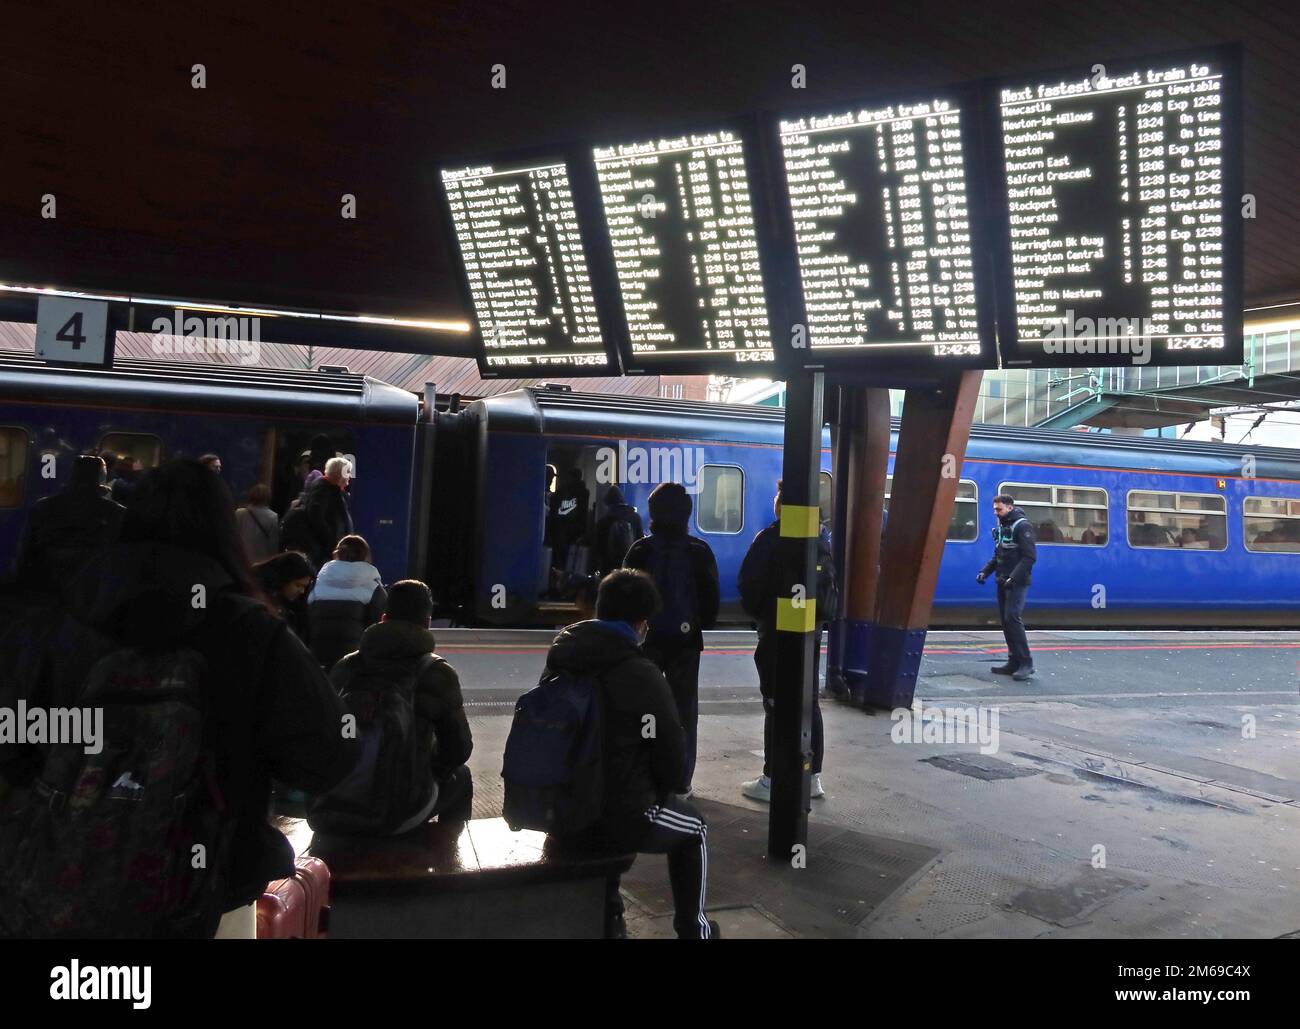 Informationstafeln am Bahnhof Oxford Road, Manchester, England, Großbritannien, M1 6FU, Bahnsteig 4 mit wartenden Pendlern Stockfoto